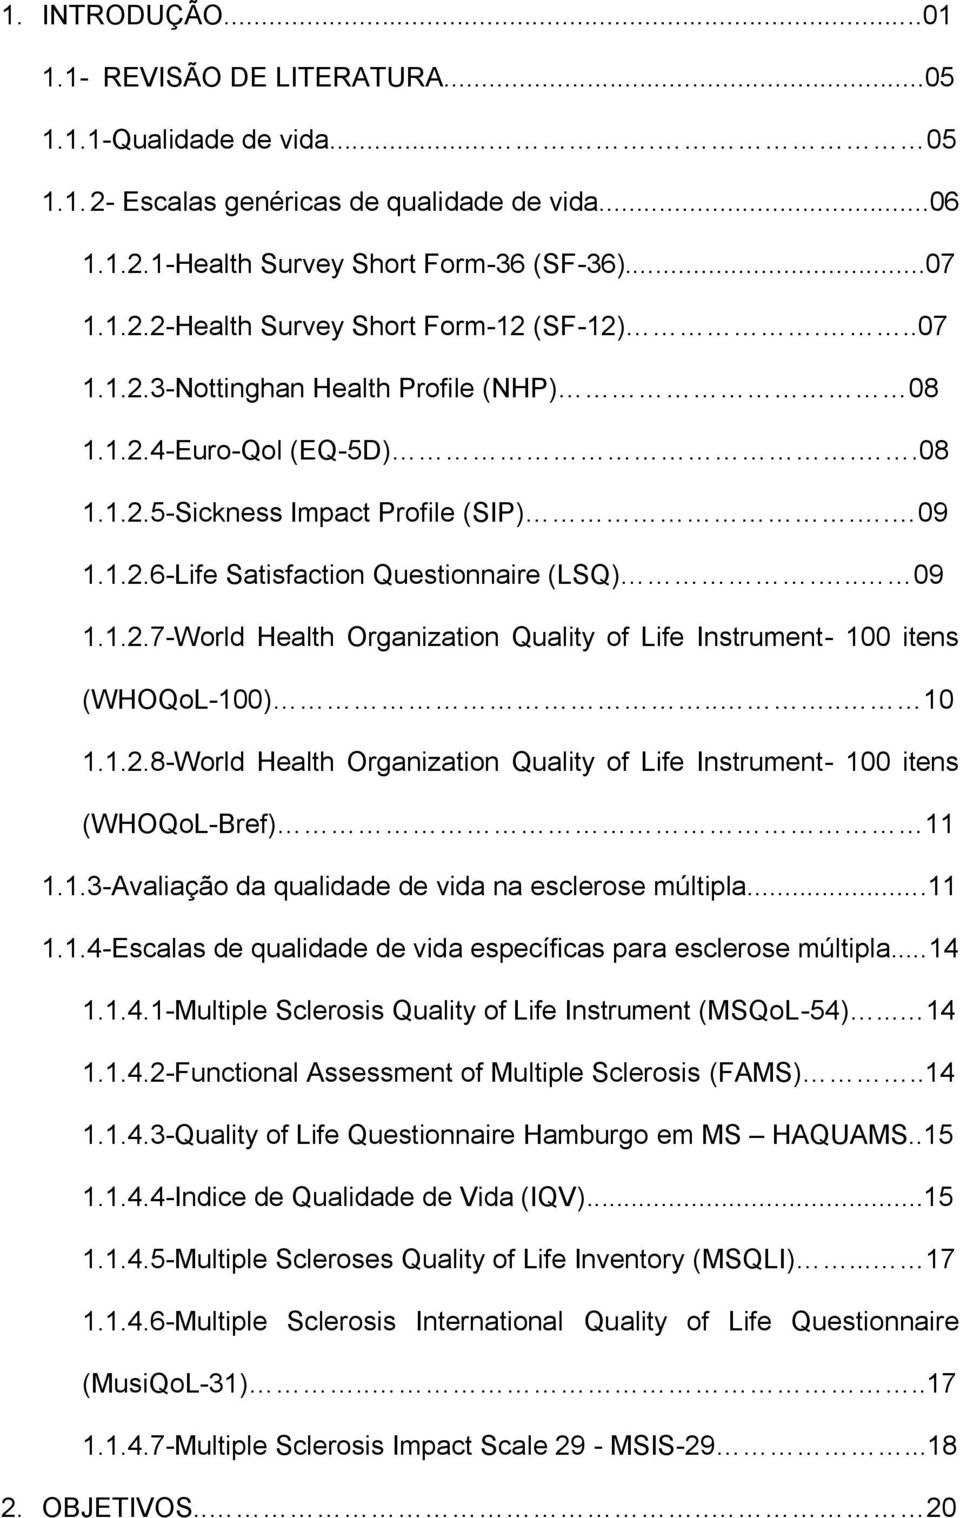 ... 10 1.1.2.8-World Health Organization Quality of Life Instrument- 100 itens (WHOQoL-Bref) 11 1.1.3-Avaliação da qualidade de vida na esclerose múltipla...11 1.1.4-Escalas de qualidade de vida específicas para esclerose múltipla.